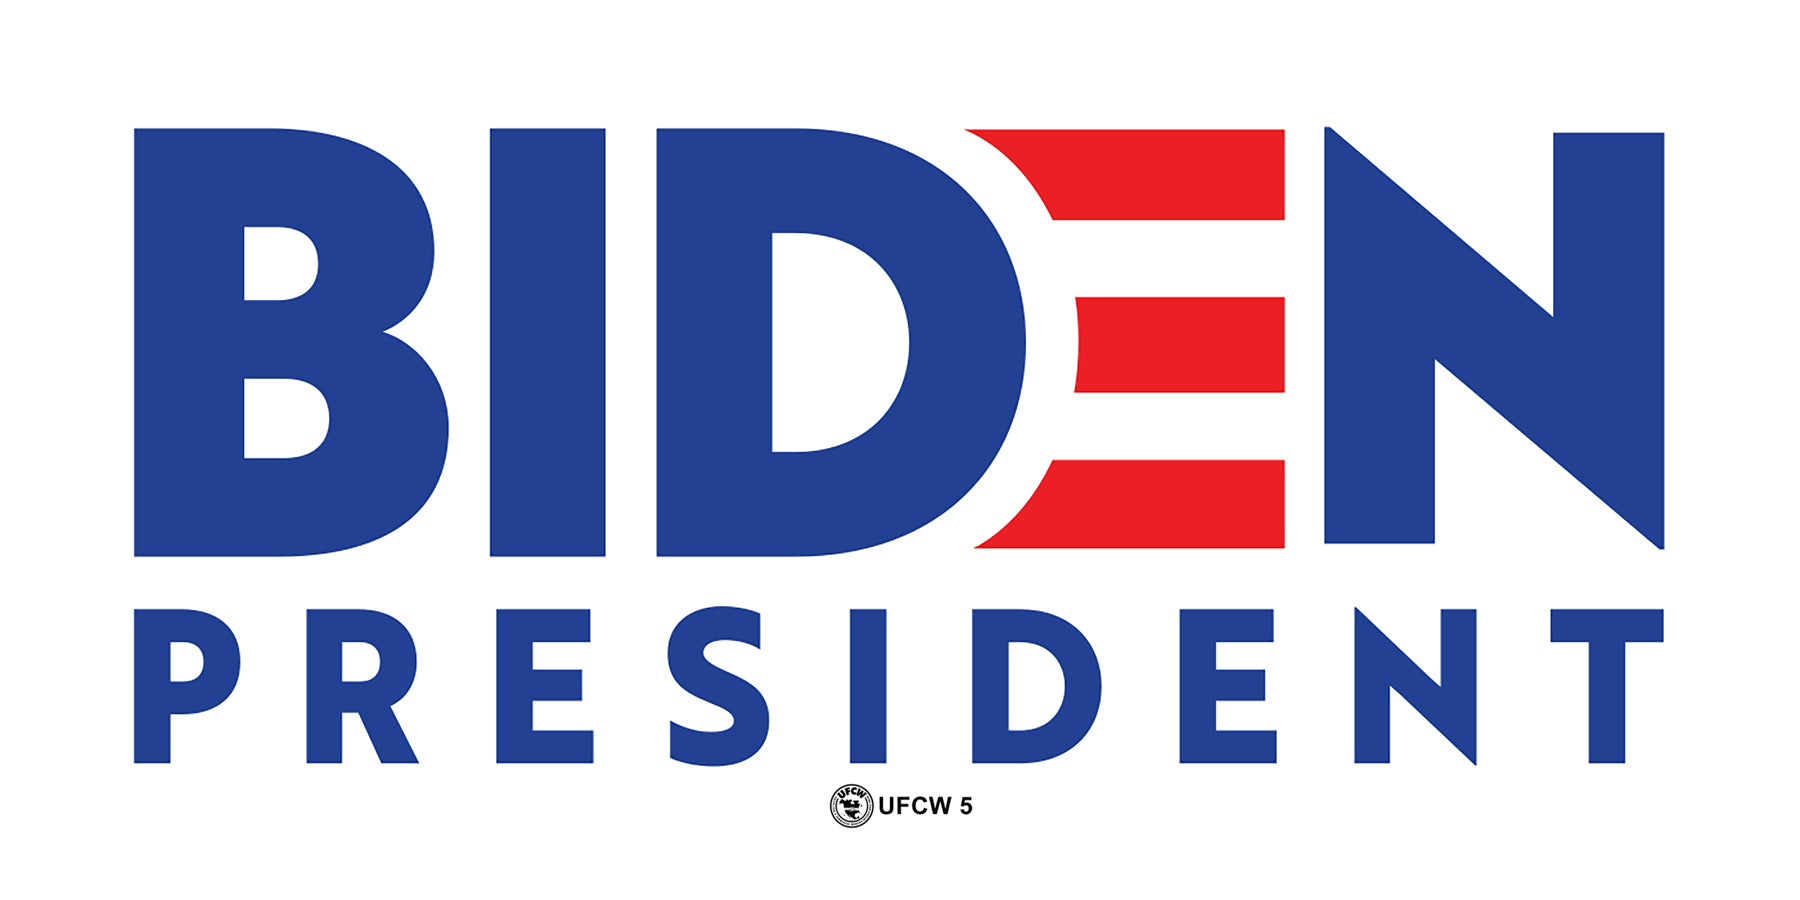 Biden-Harris 2020